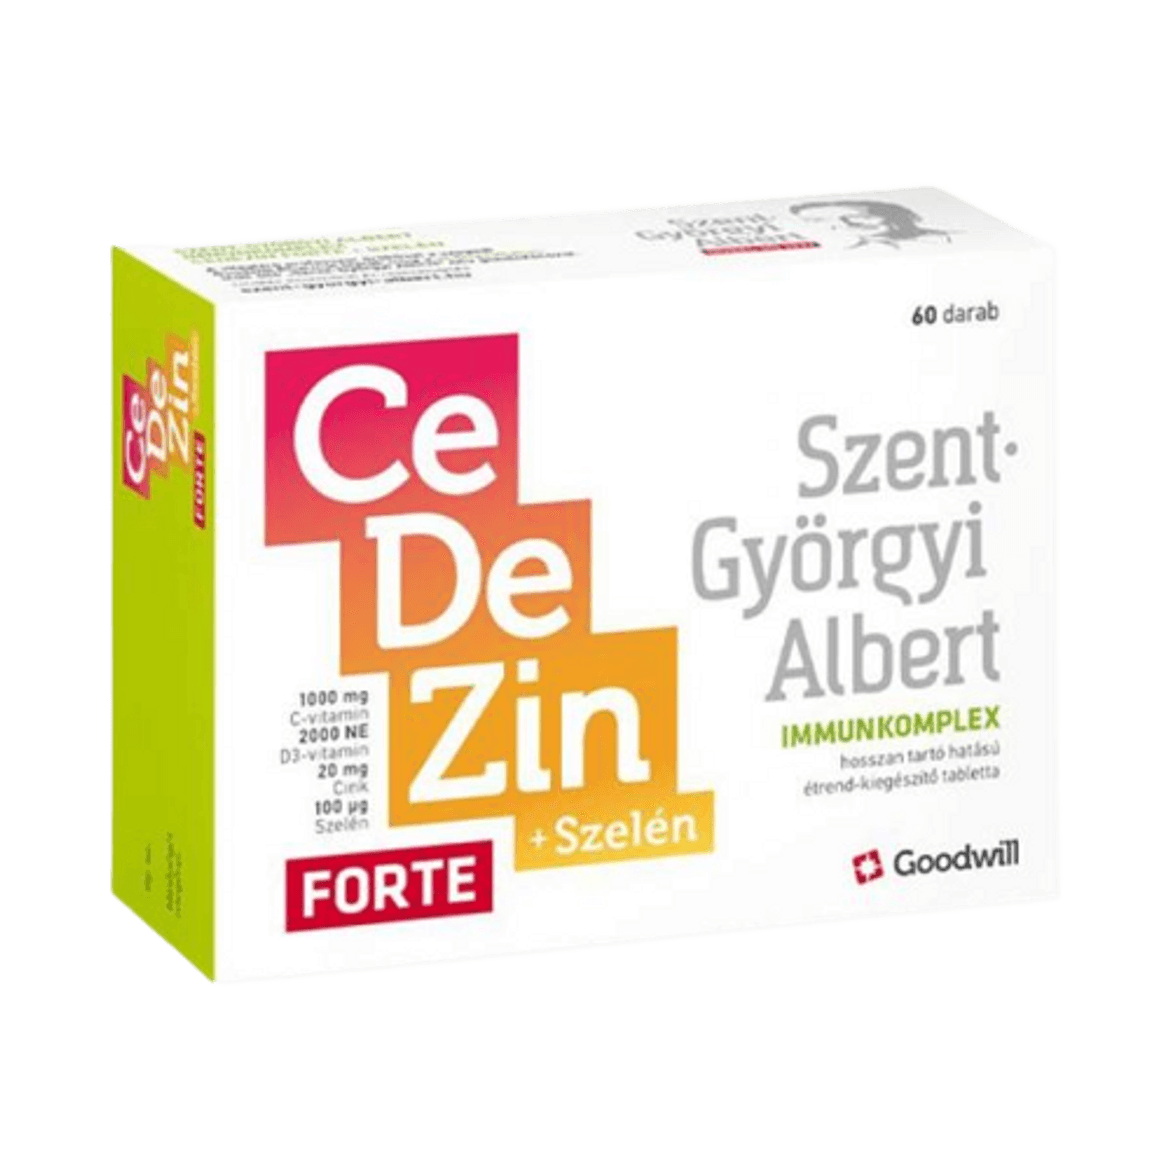 Szent-Györgyi Albert Immunkomplex Cedezin Forte + Szelén tabletta